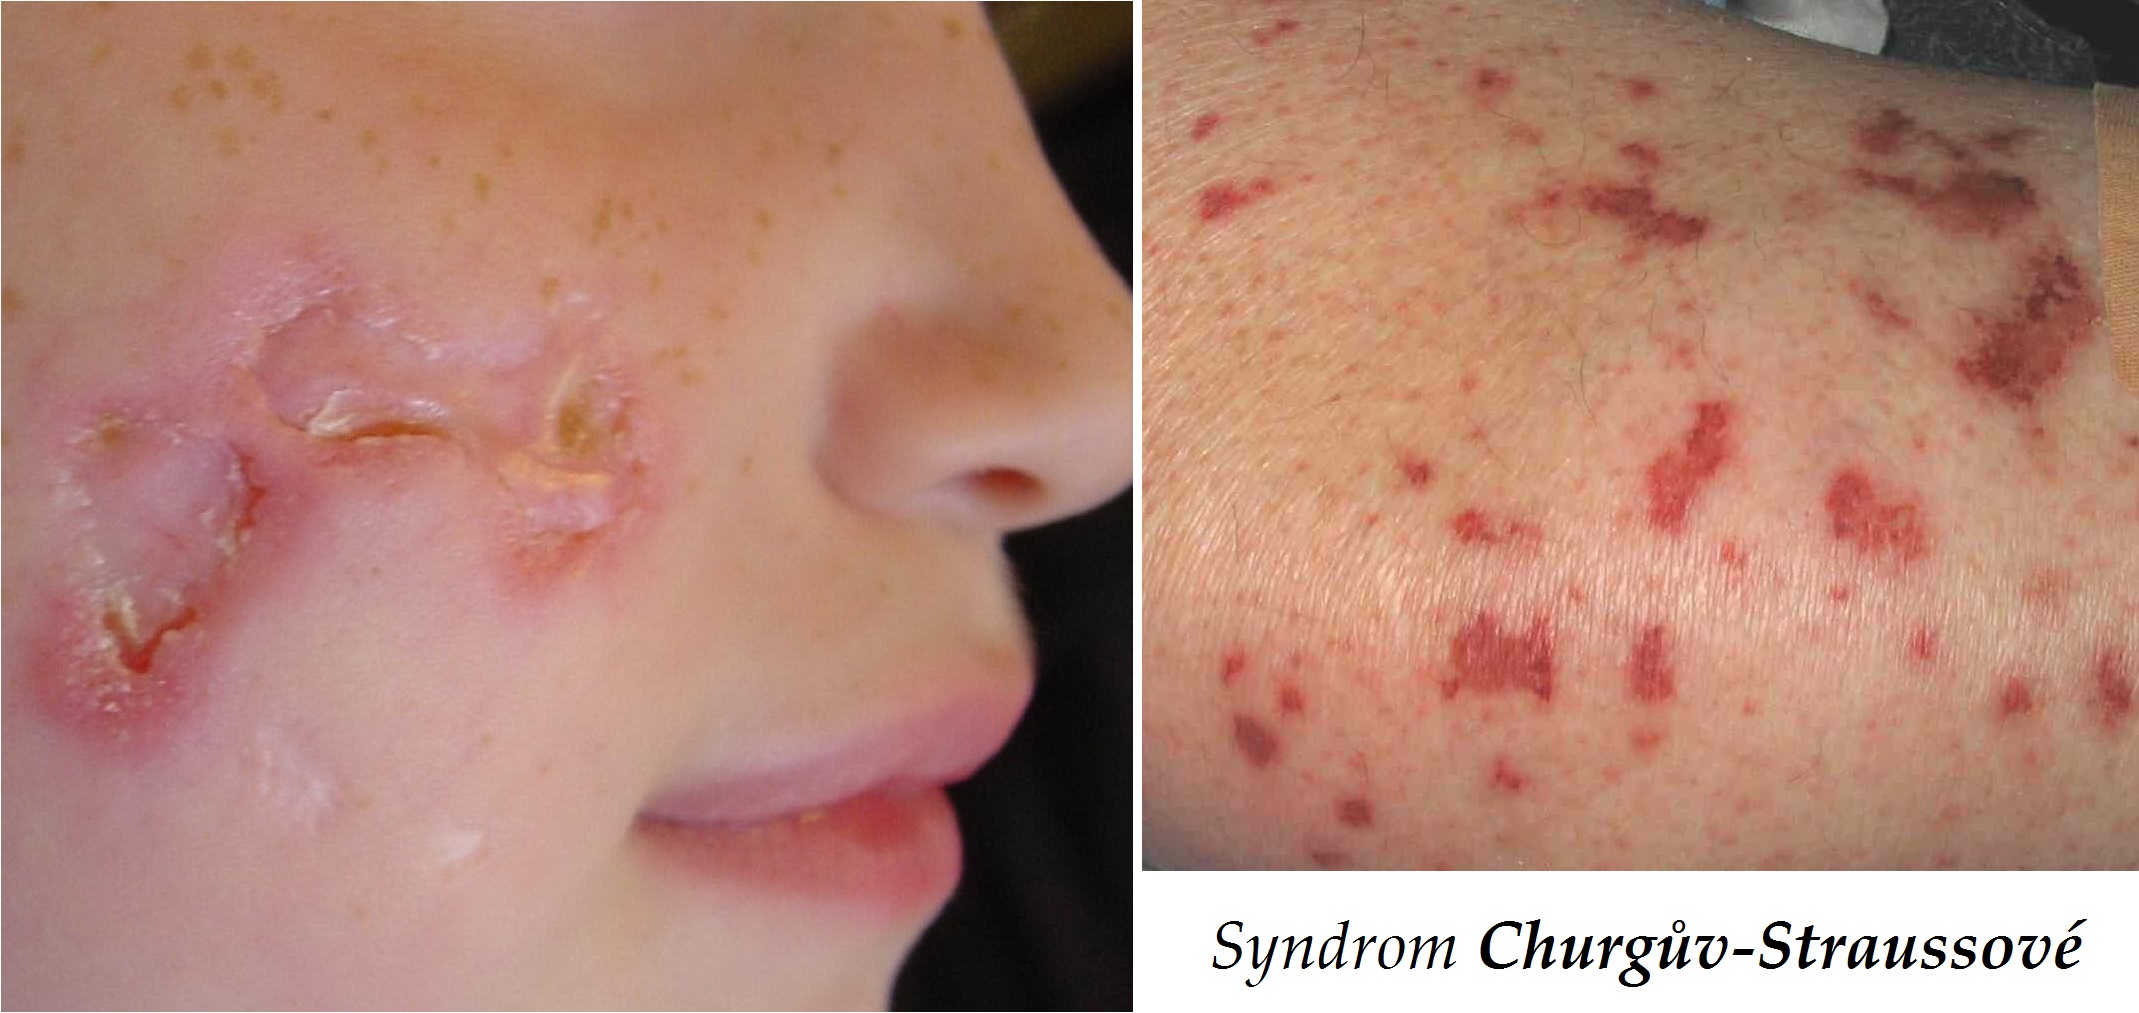 syndrom-churguv-straussove-alergicka-granulomatozni-angitida-priznaky-projevy-symptomy